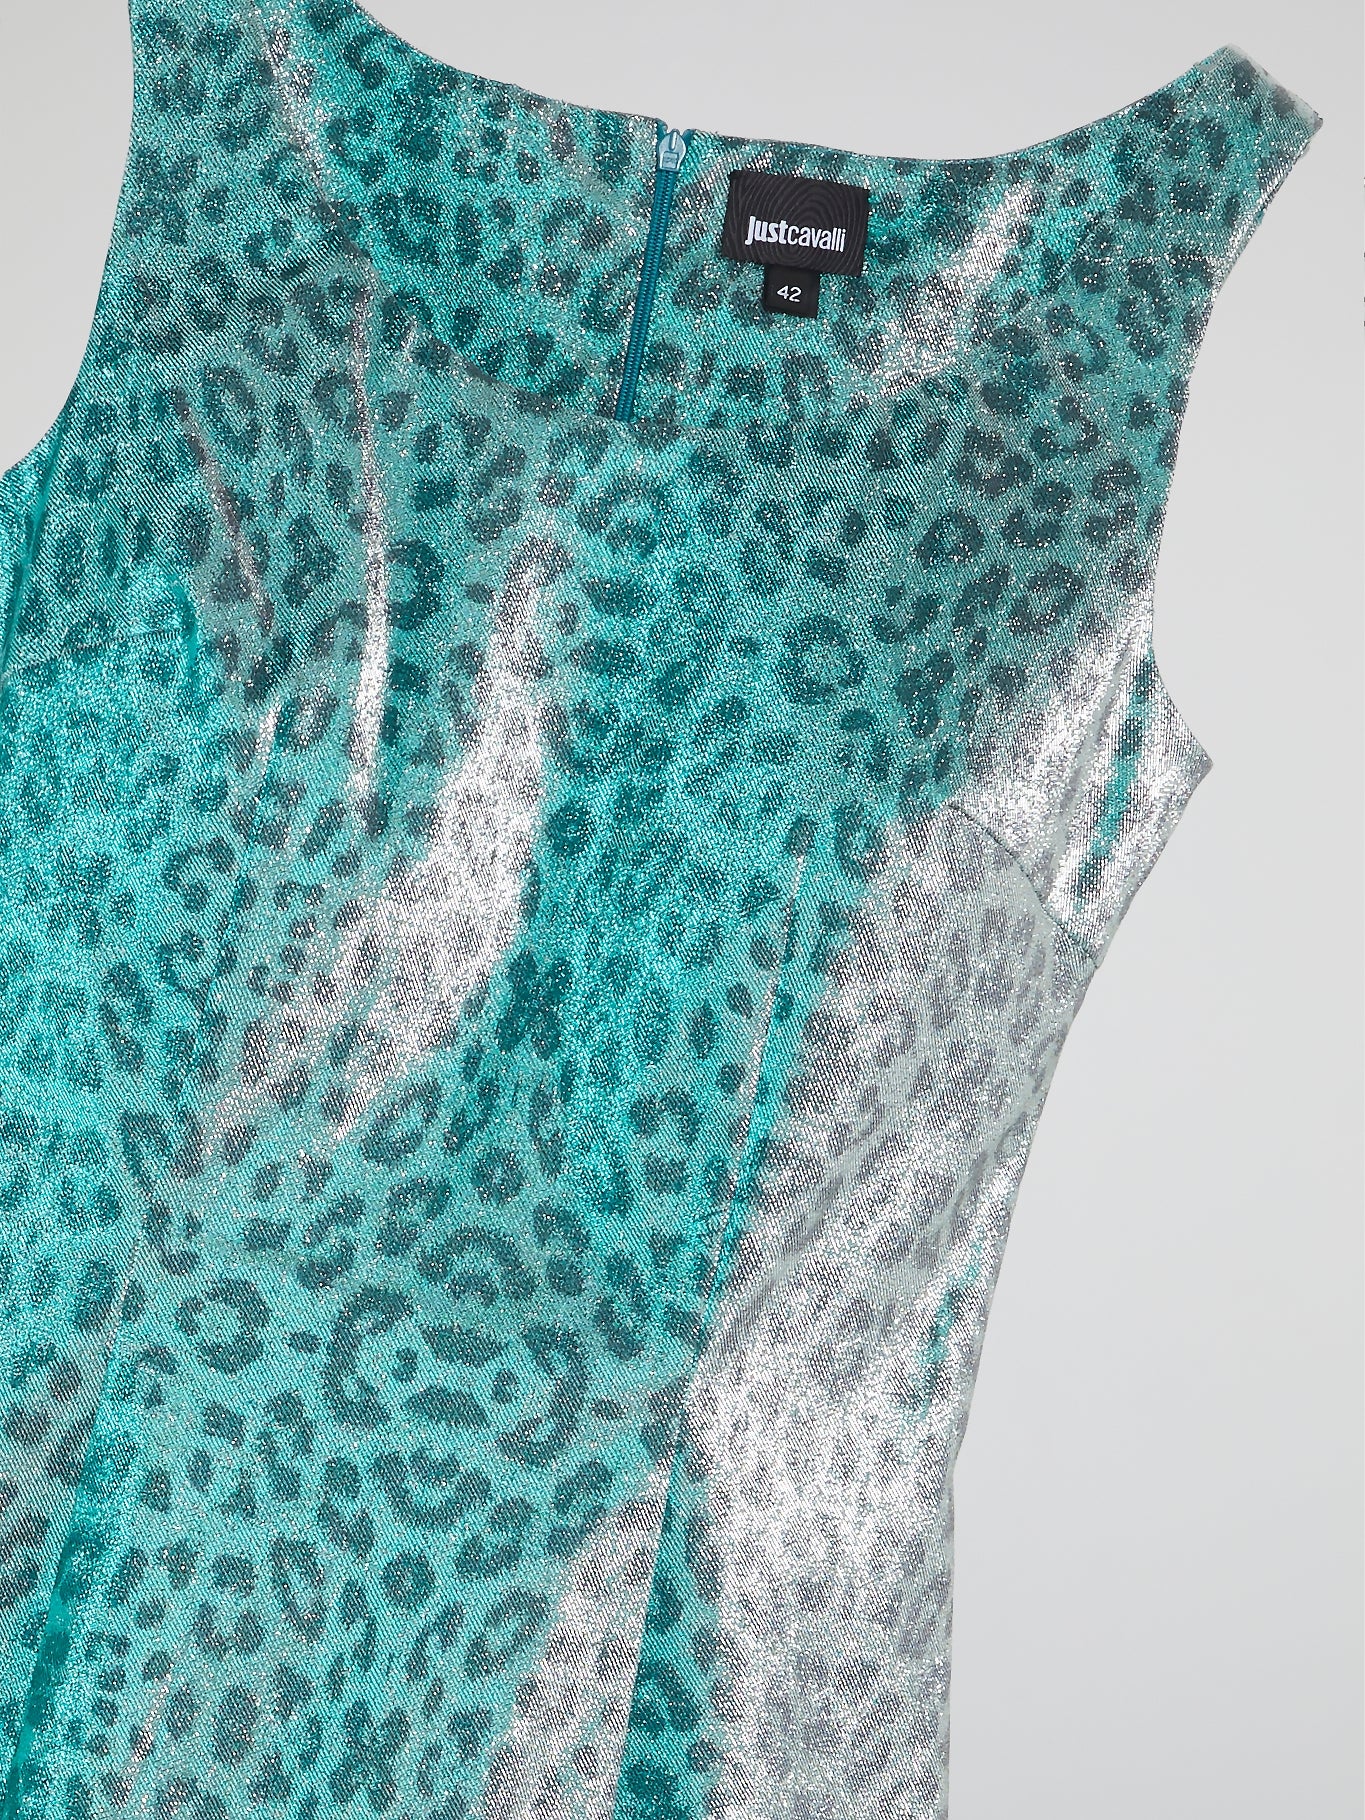 Glittered Leopard Print Dress